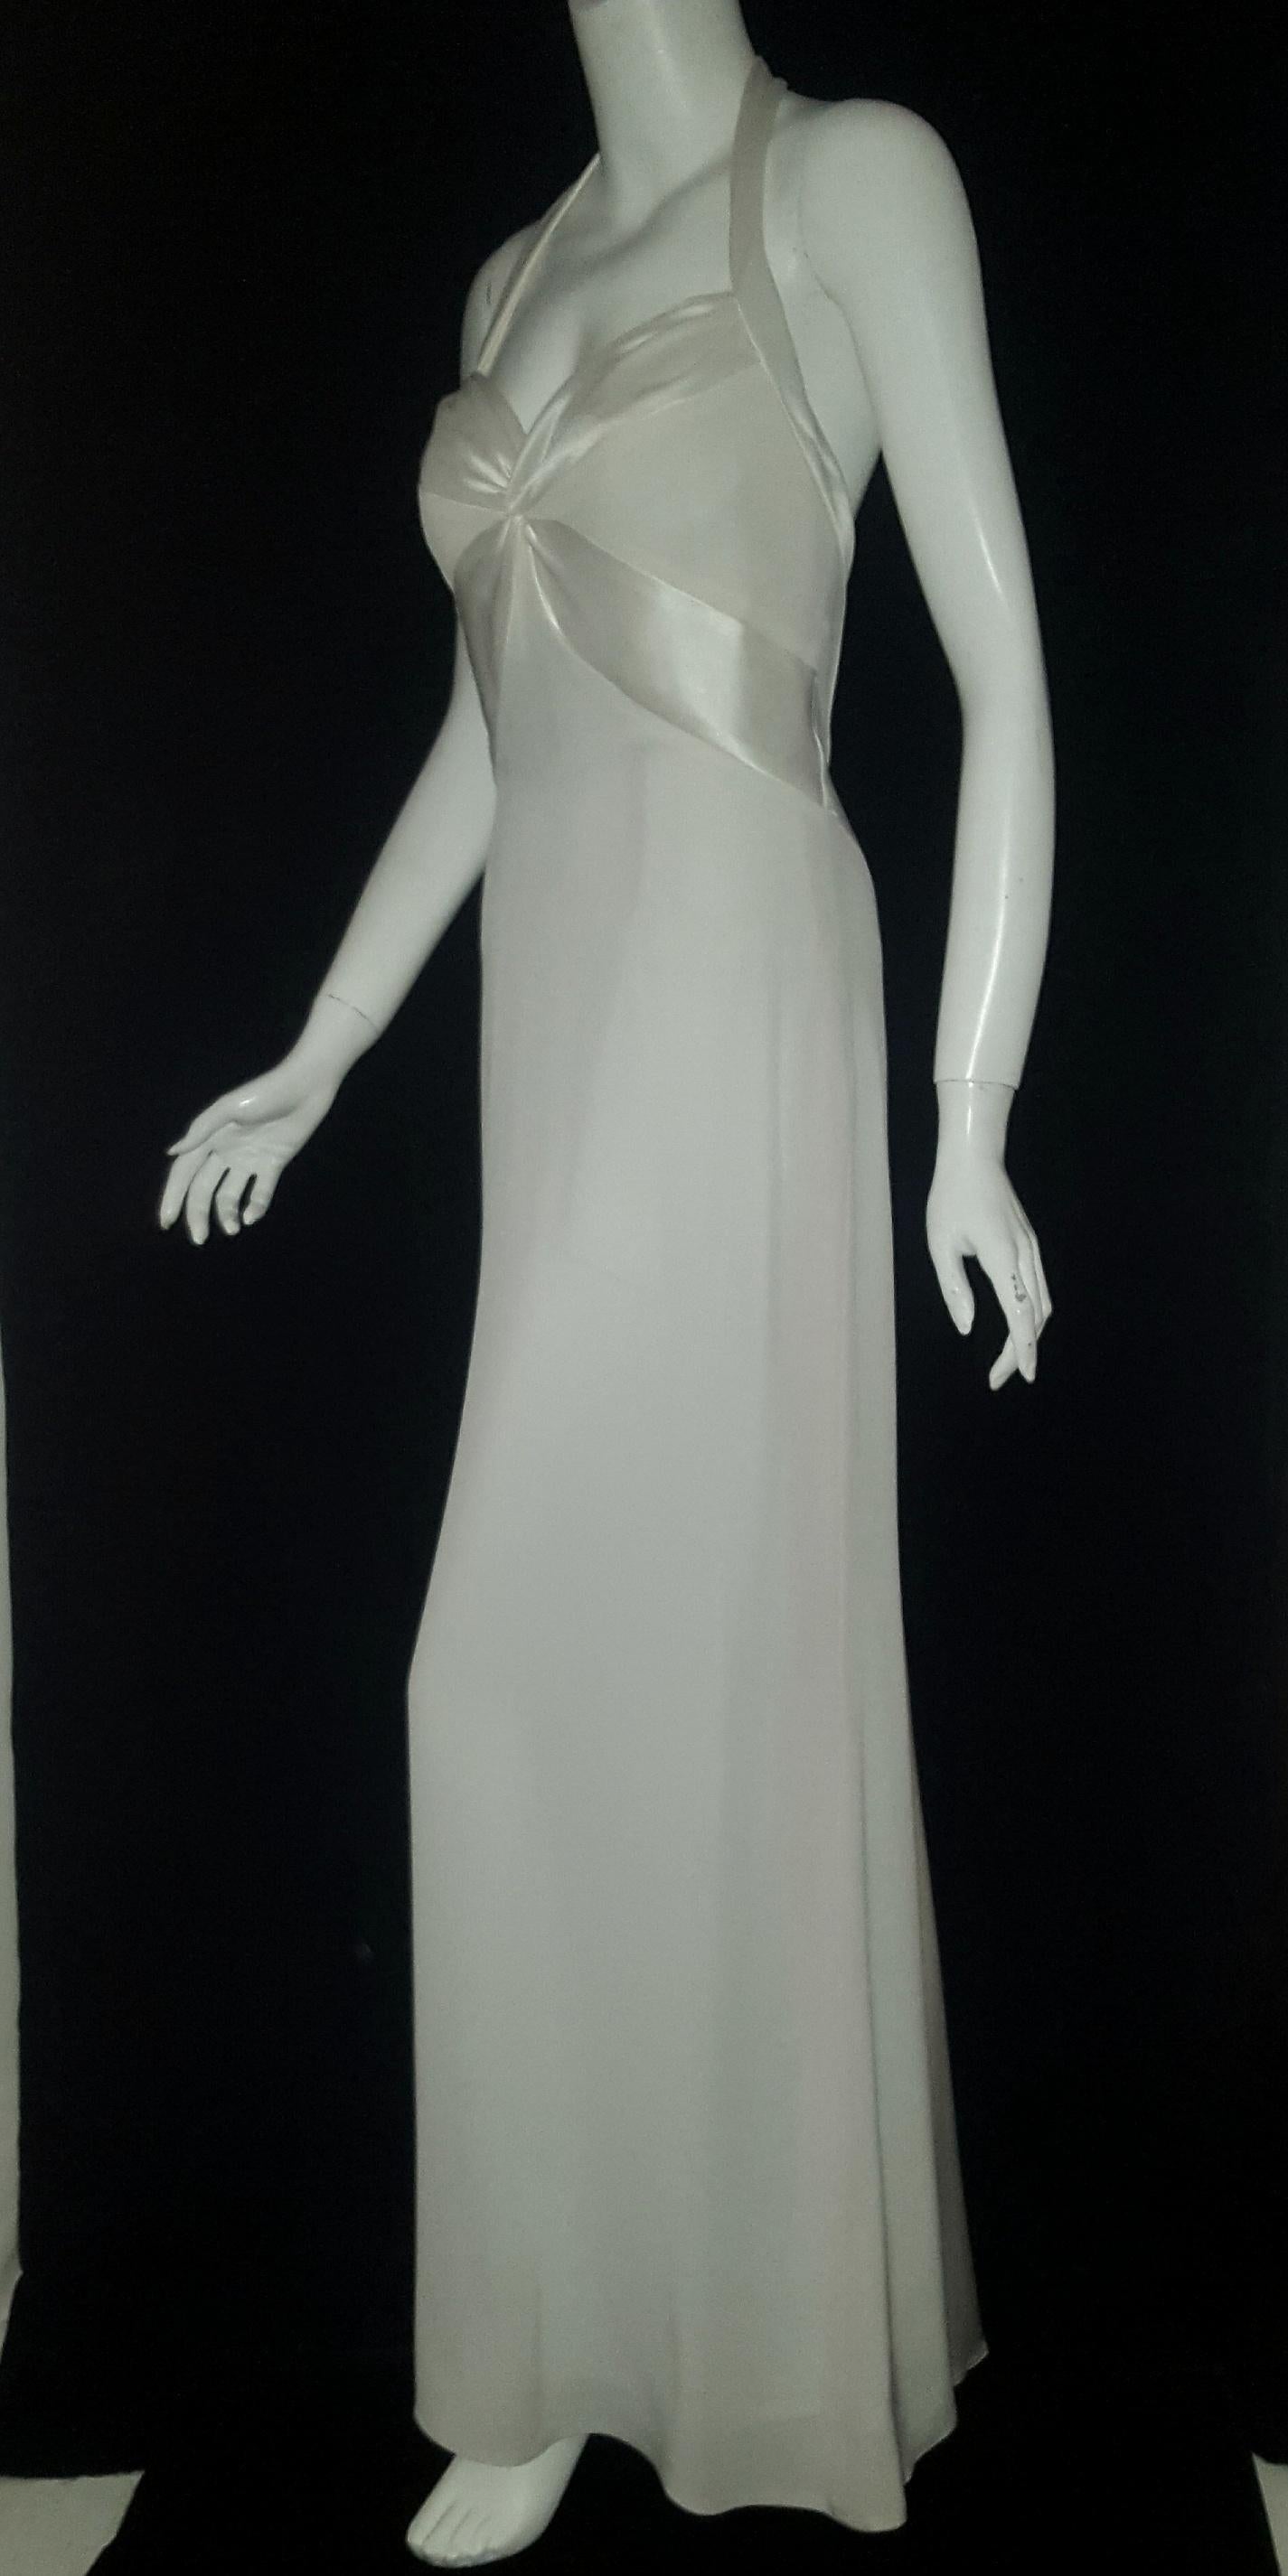 Bob Mackie weißes Neckholder-Top, bodenlanger Saum mit Satin-Akzenten im Brustbereich.  Das Kleid enthält einen Innen-BH, der diesem Bereich zusätzliche Kontur verleiht und ihn anhebt.  Dieses Kleid ist elegant und schlicht, mit taillierter Taille